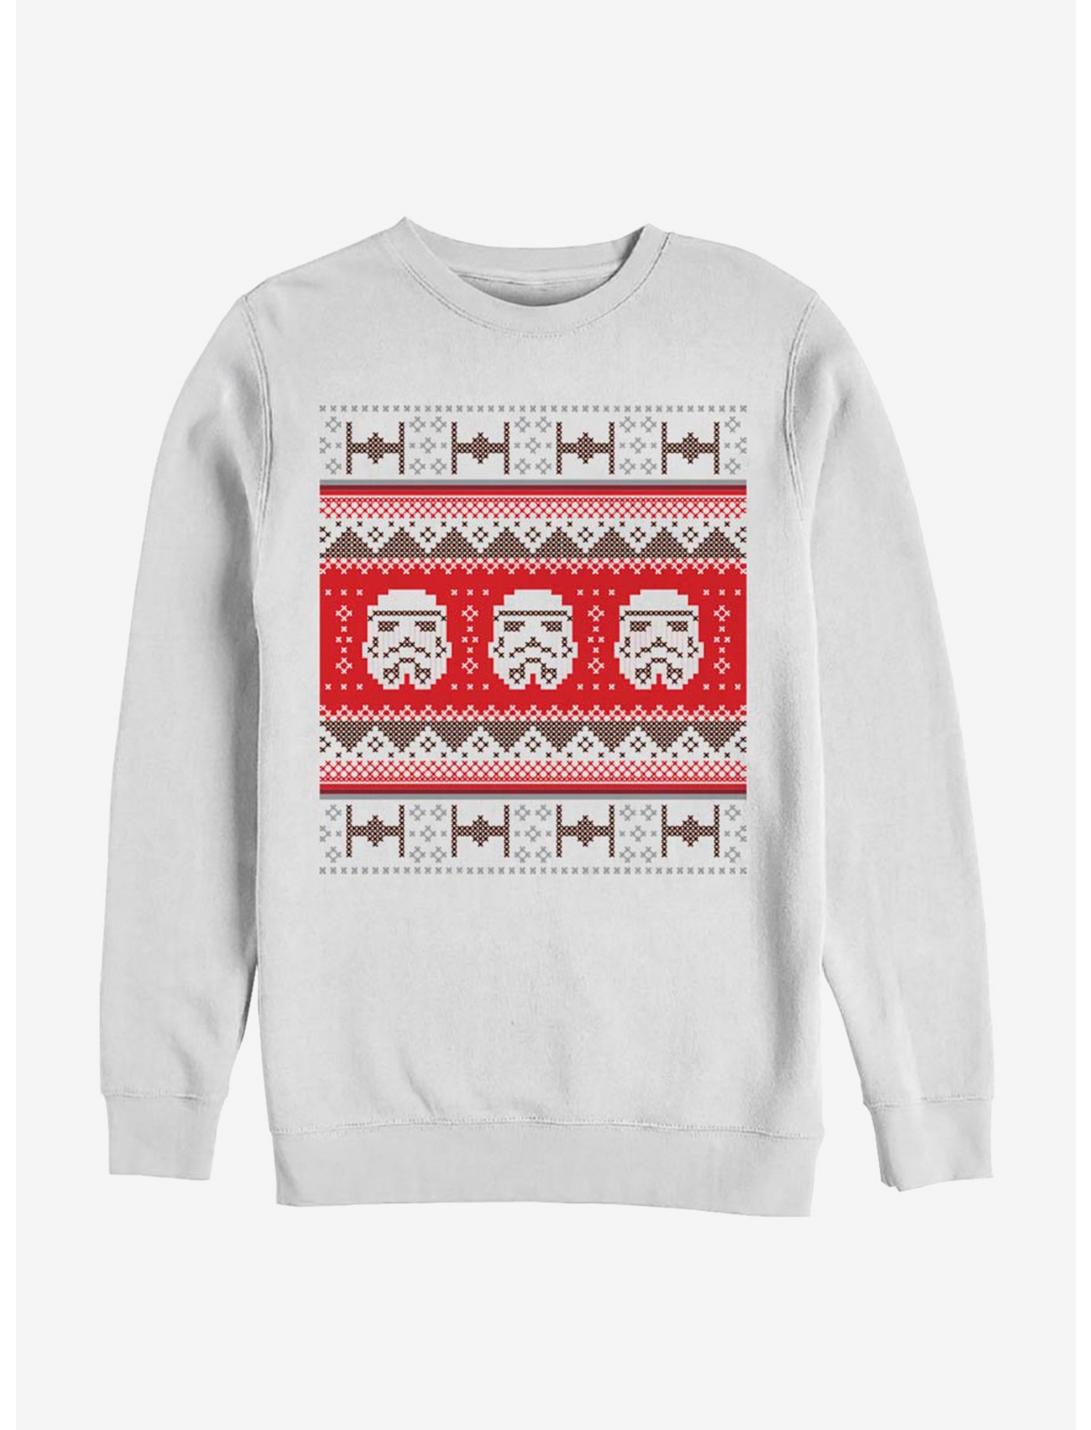 Star Wars Trooper Stitches Sweatshirt, WHITE, hi-res